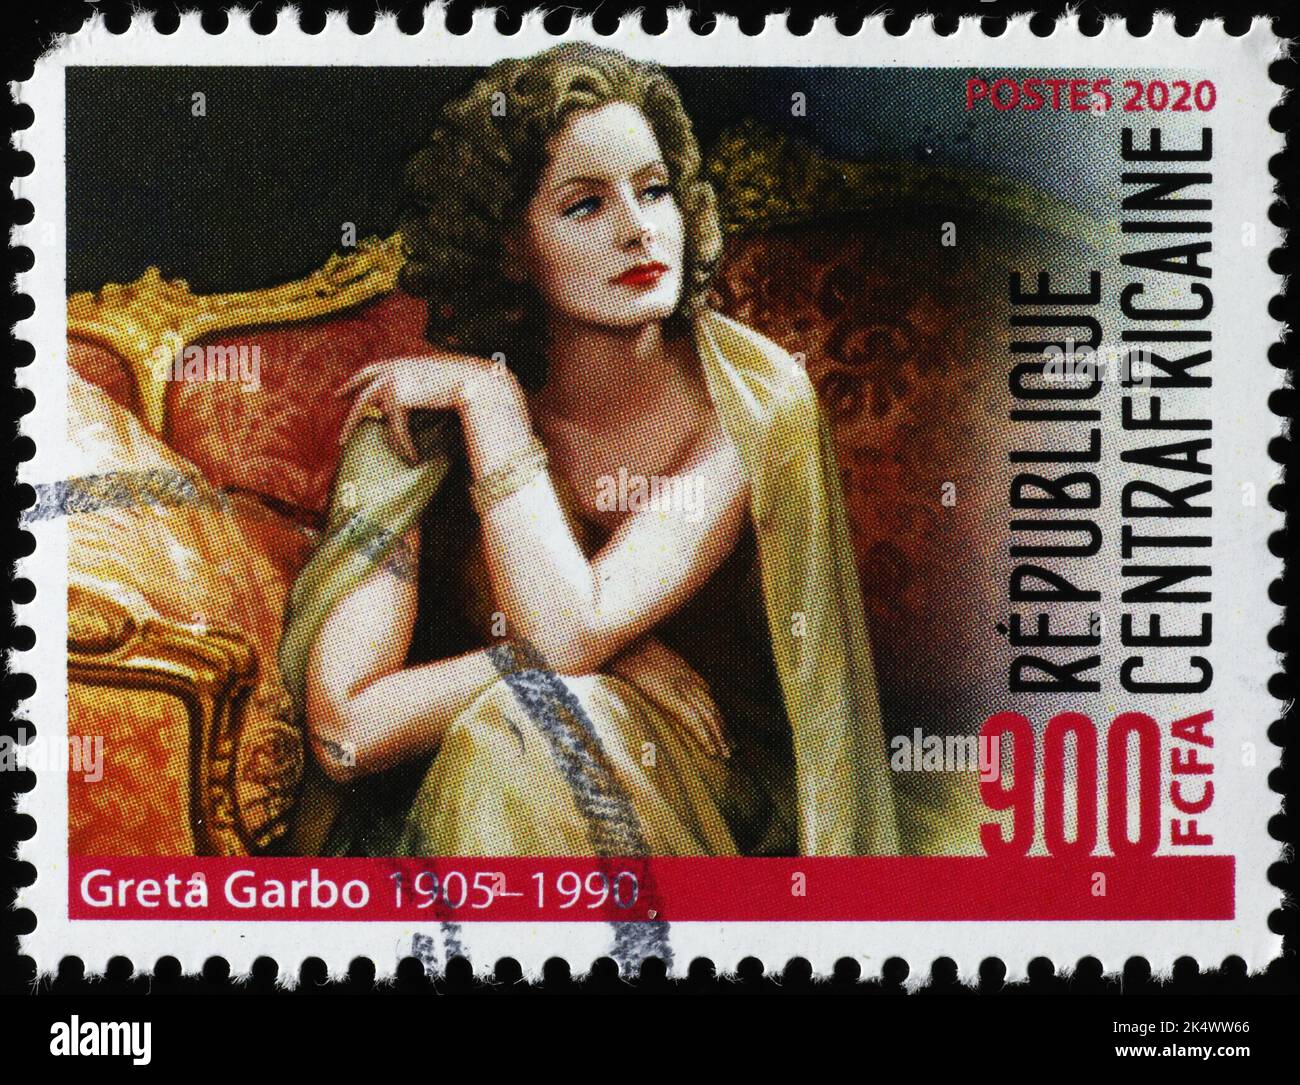 Greta Garbo en sello de franqueo africano Foto de stock